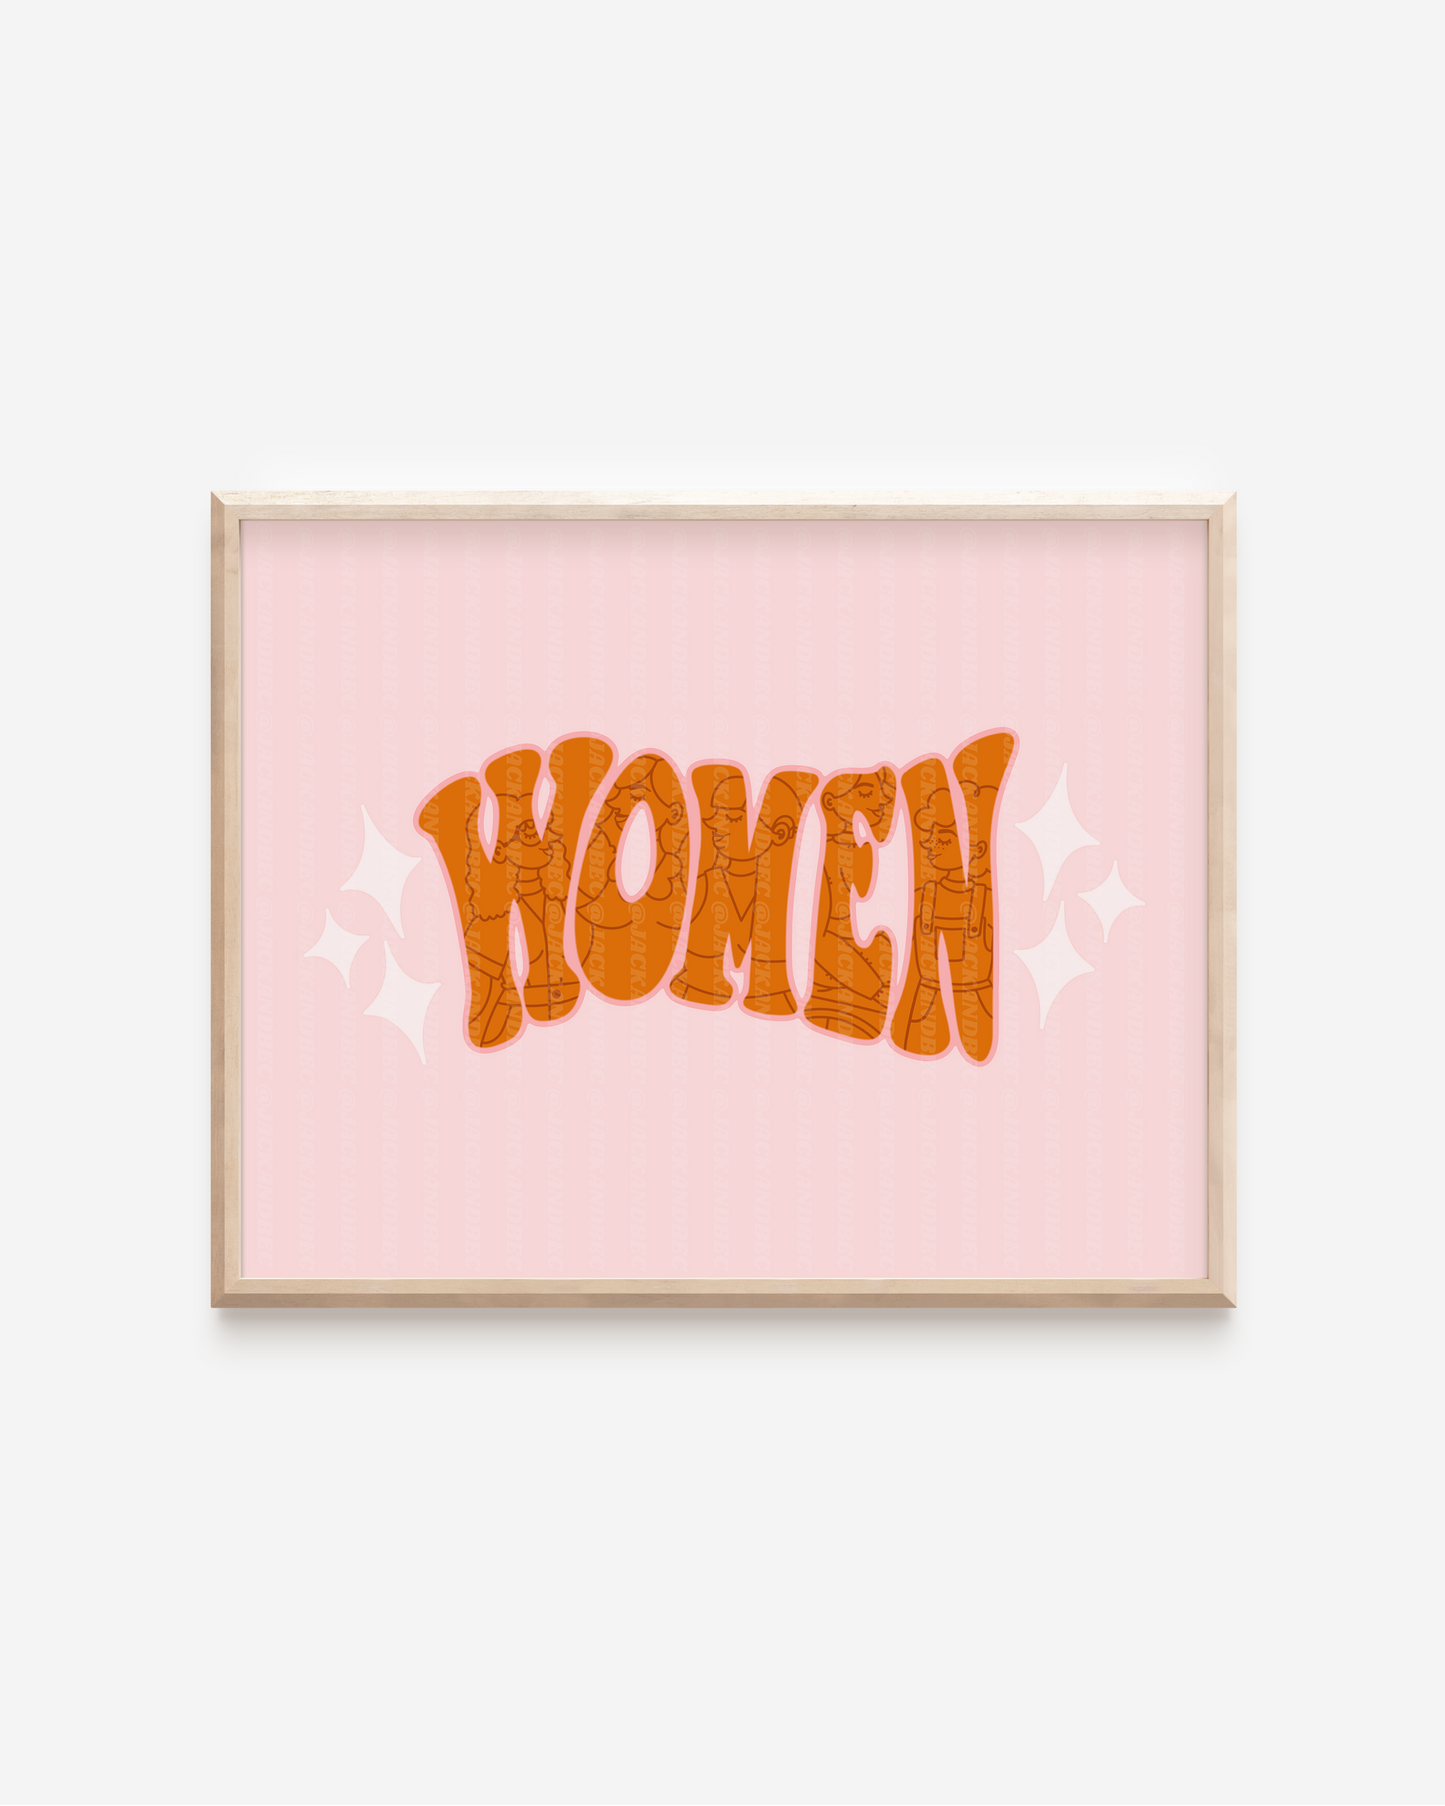 "Women ✨" Print